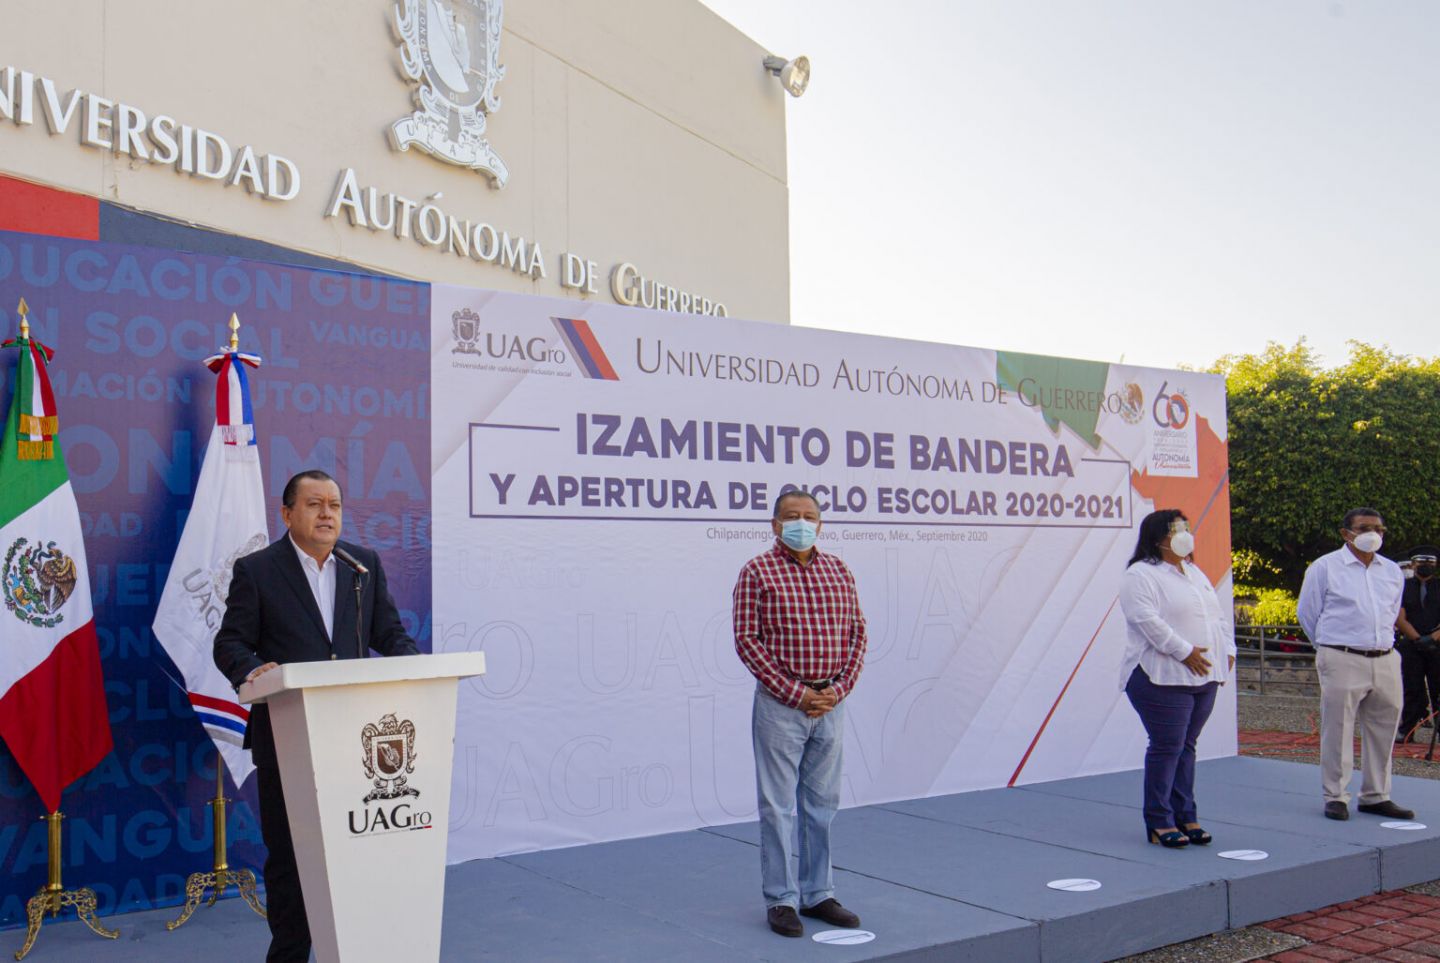 Inaugura Javier Saldaña el nuevo ciclo escolar, que será virtual en la UAGro
